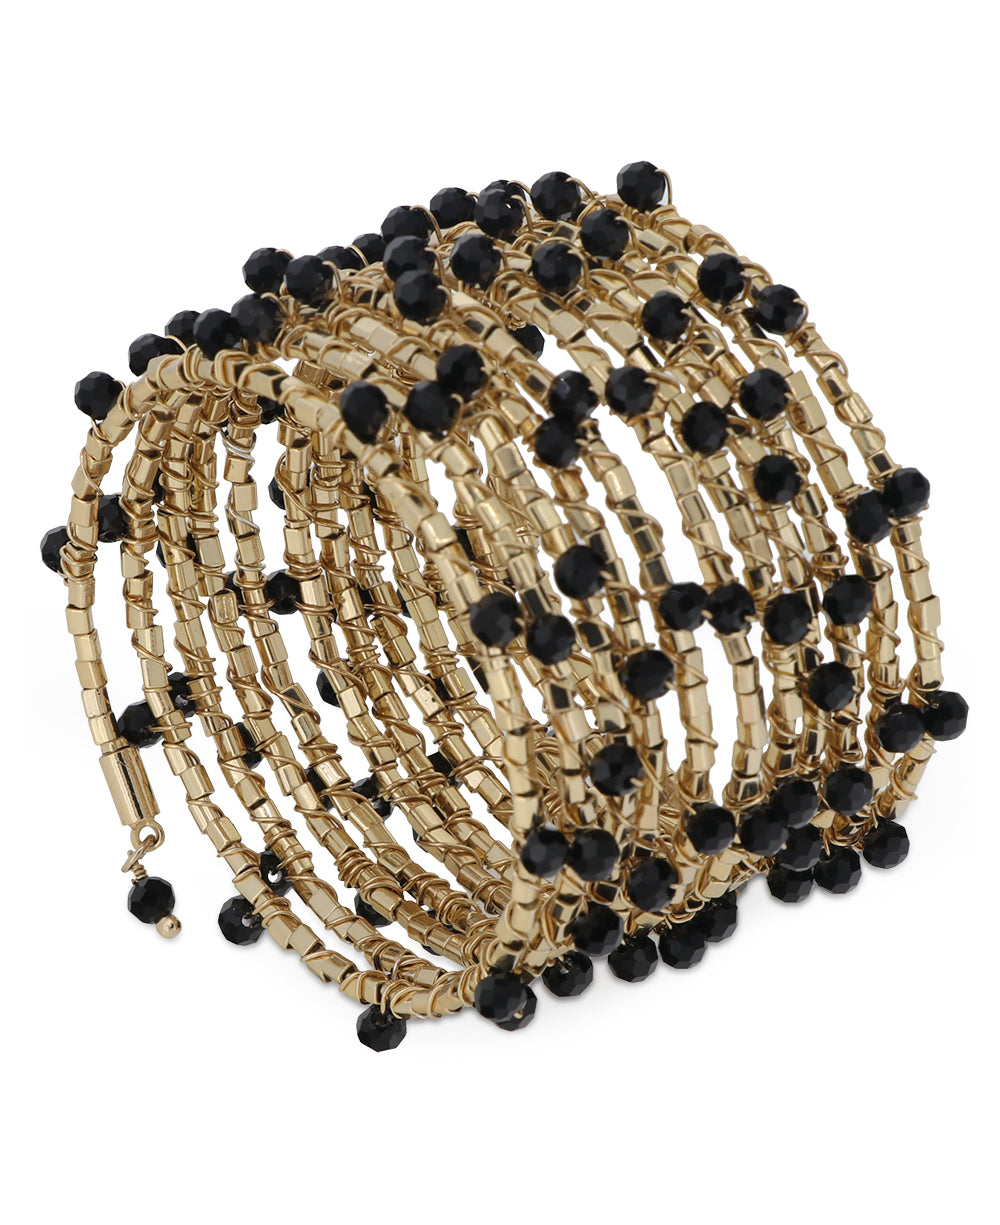 Wrap bracelet with black beads